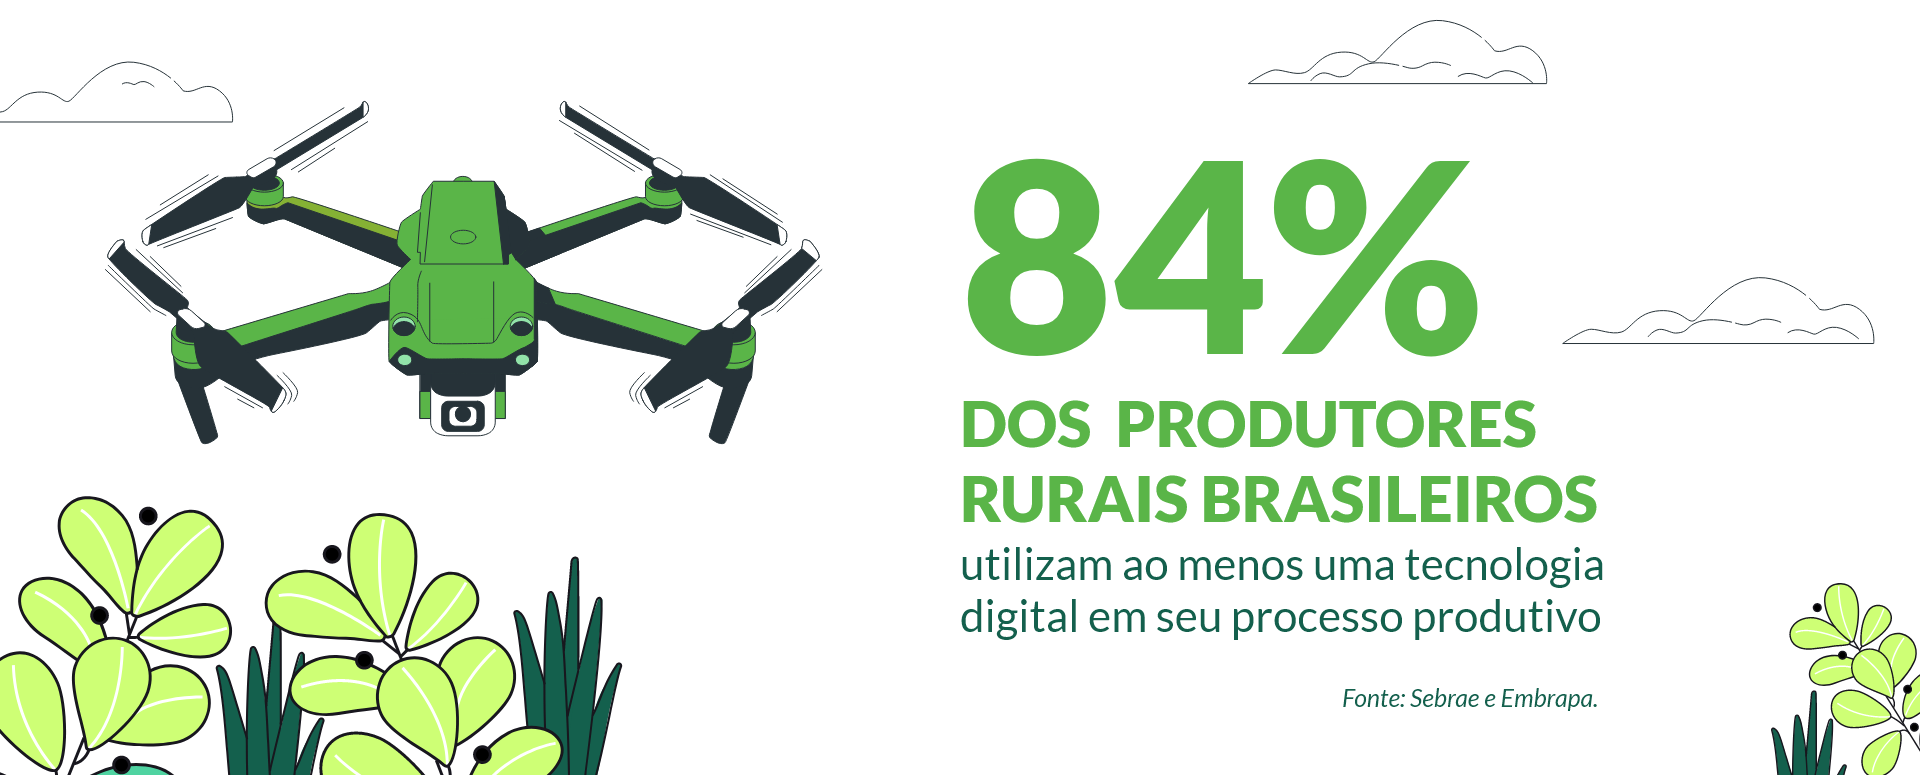 84% dos produtores rurais brasileiros utilizam tecnologias em seu processo produtivo.